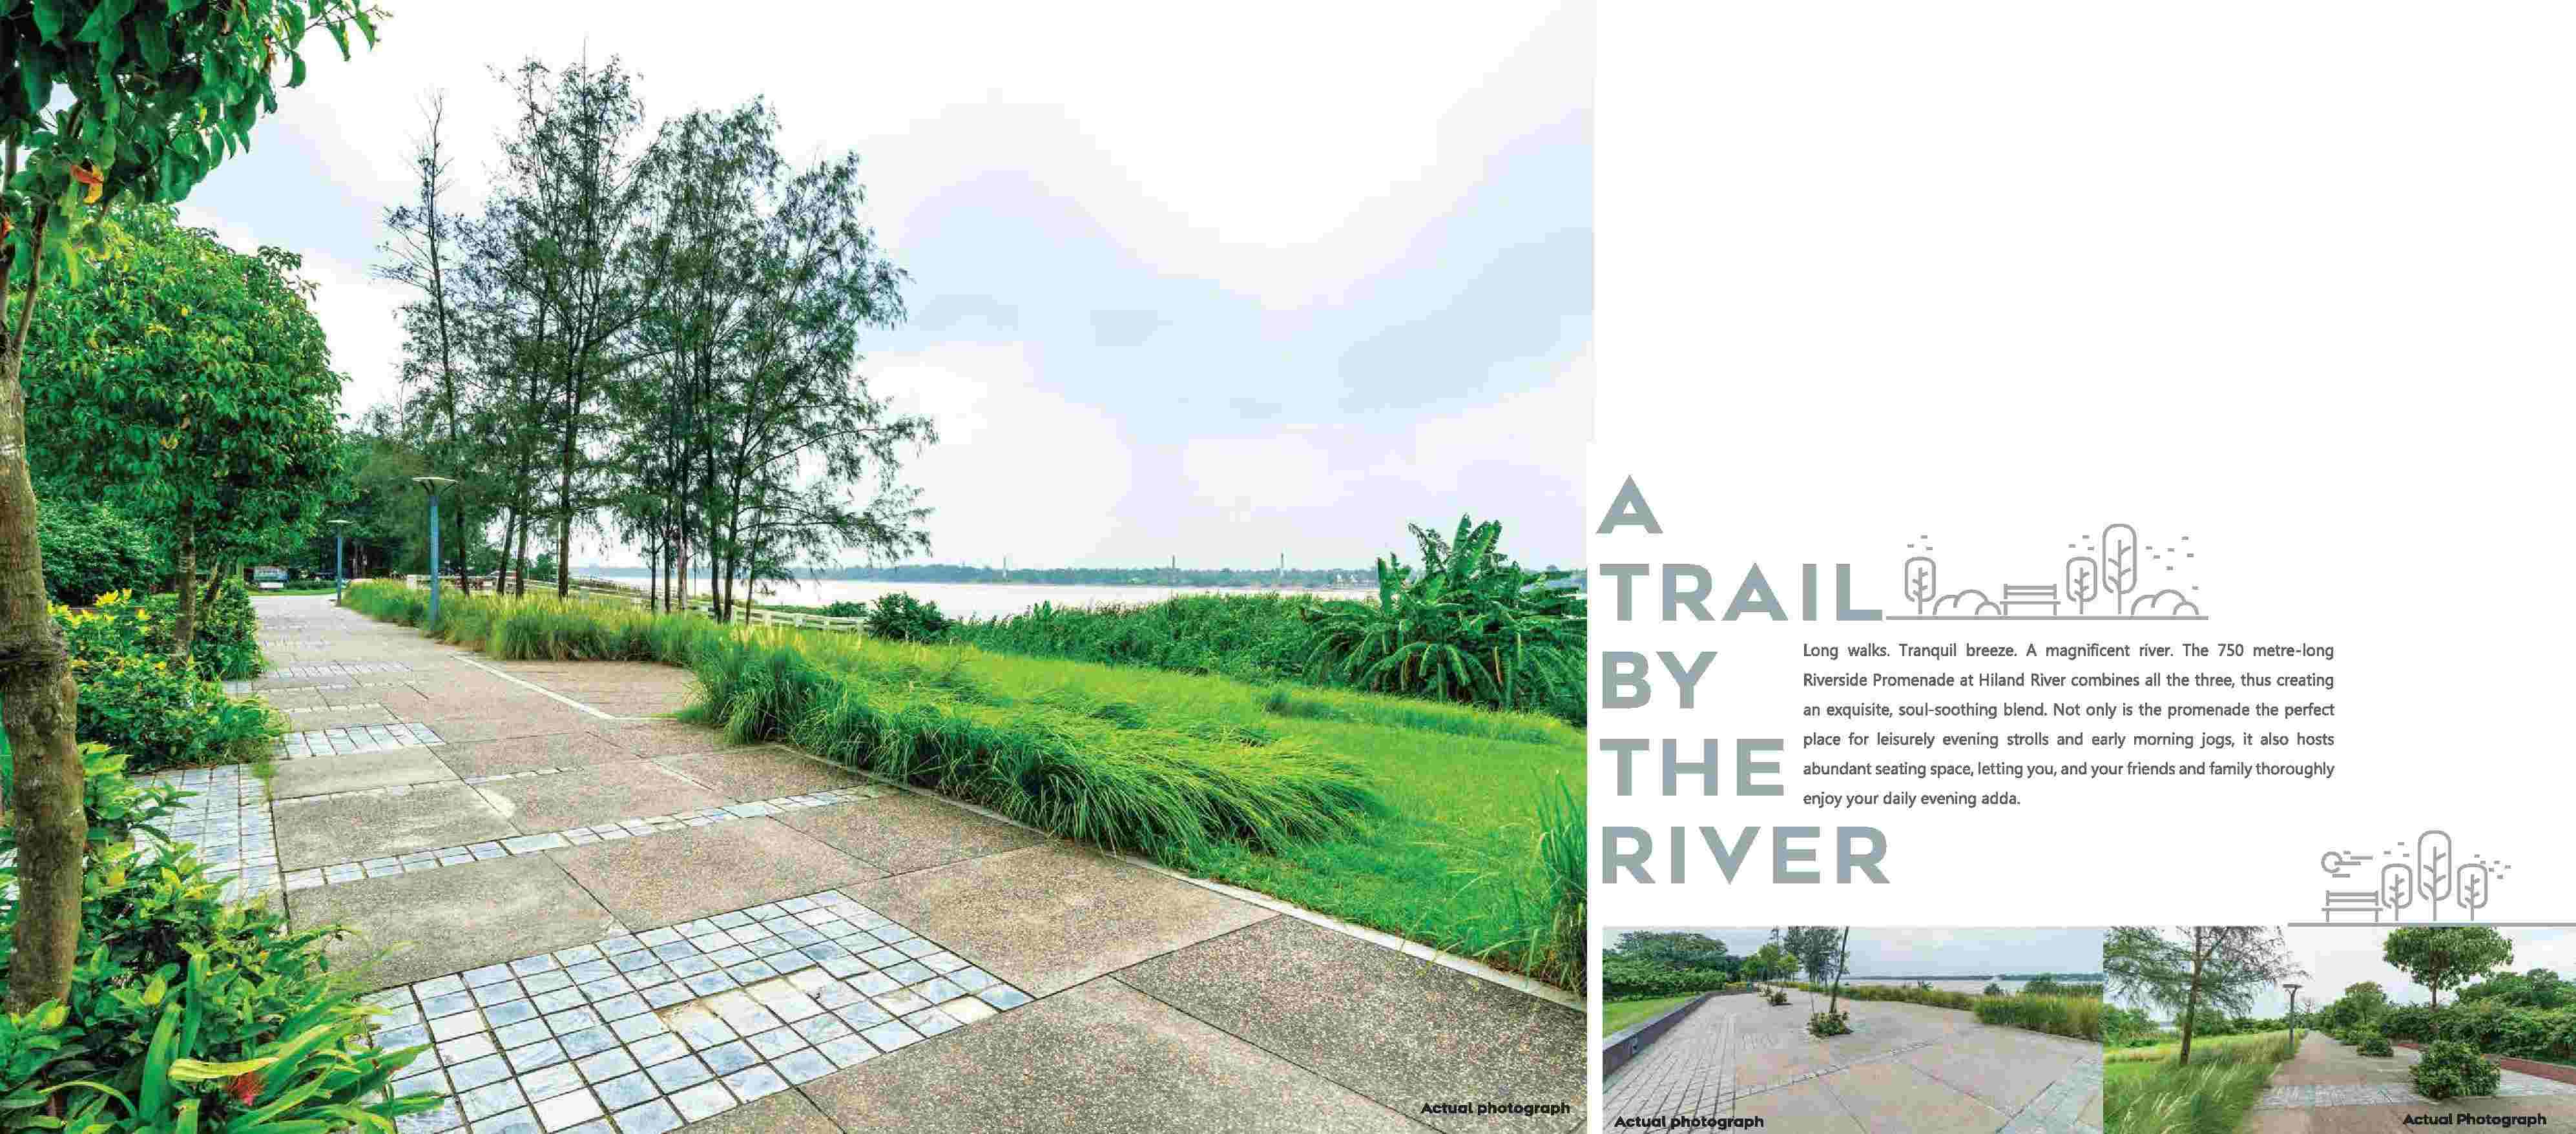 Hiland River, a trail by the river in Kolkata Update